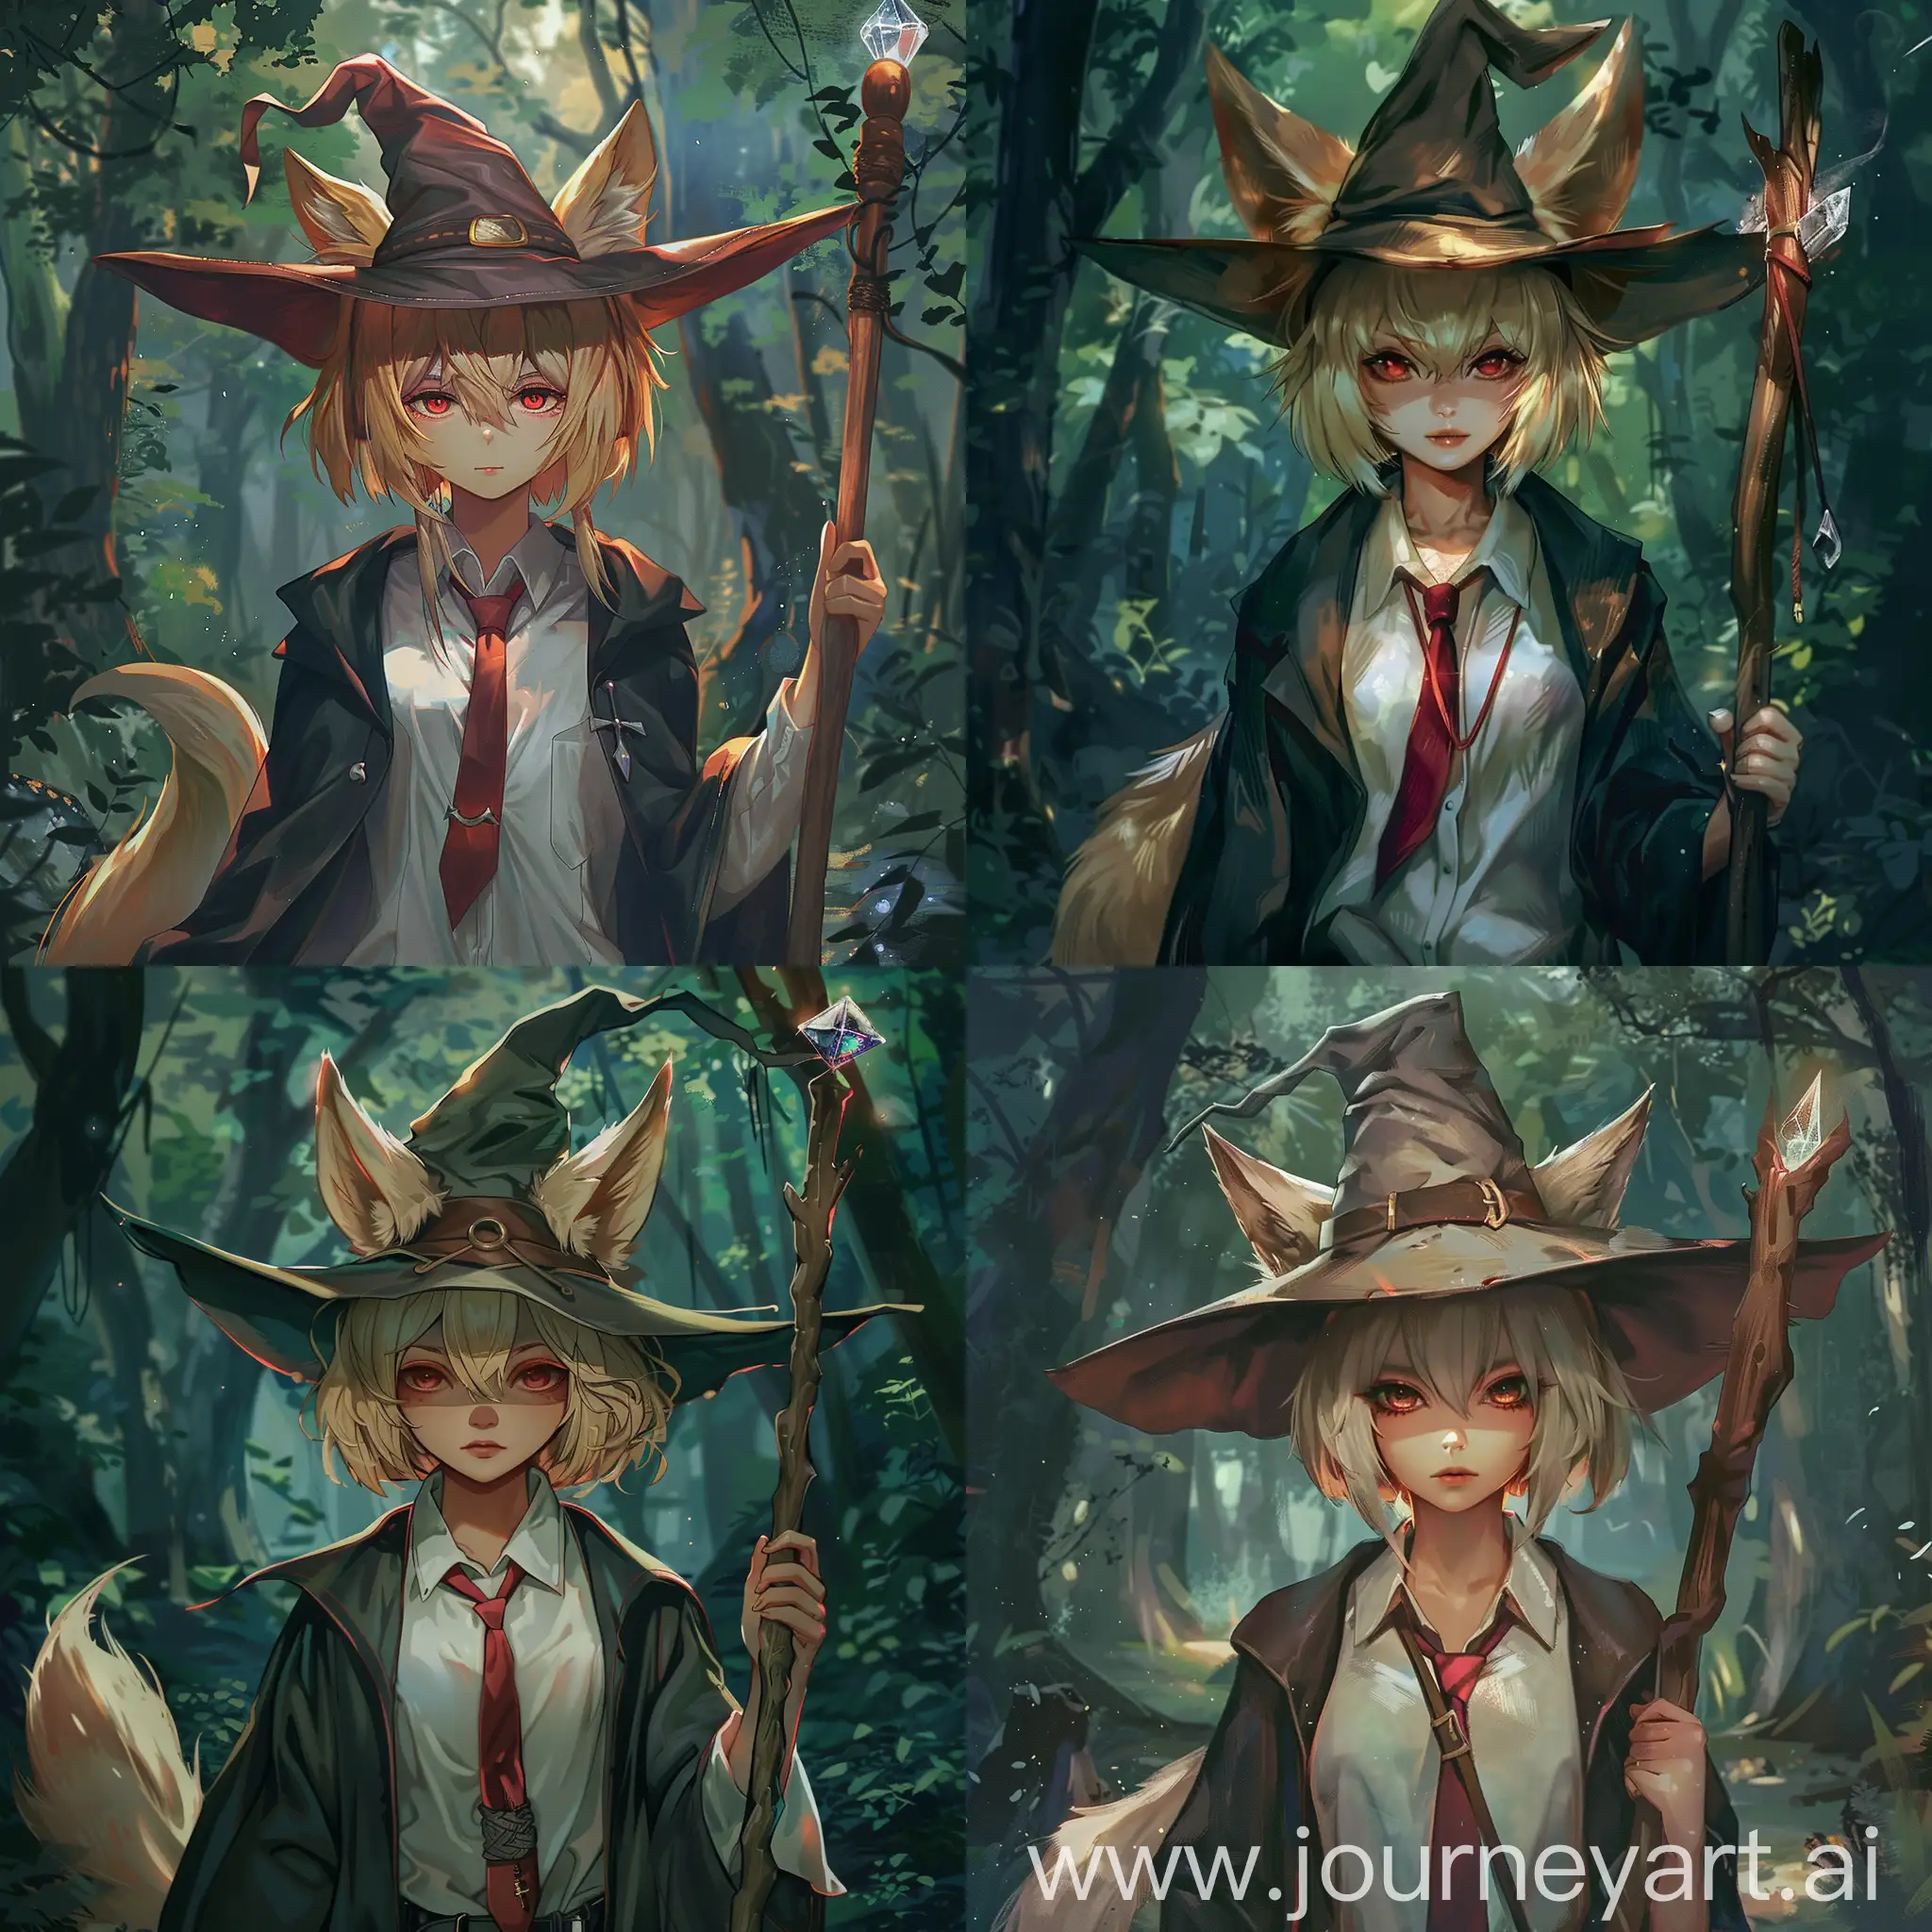 Blonde-Kitsune-Wizard-Walking-Through-Dense-Forest-with-Wooden-Staff